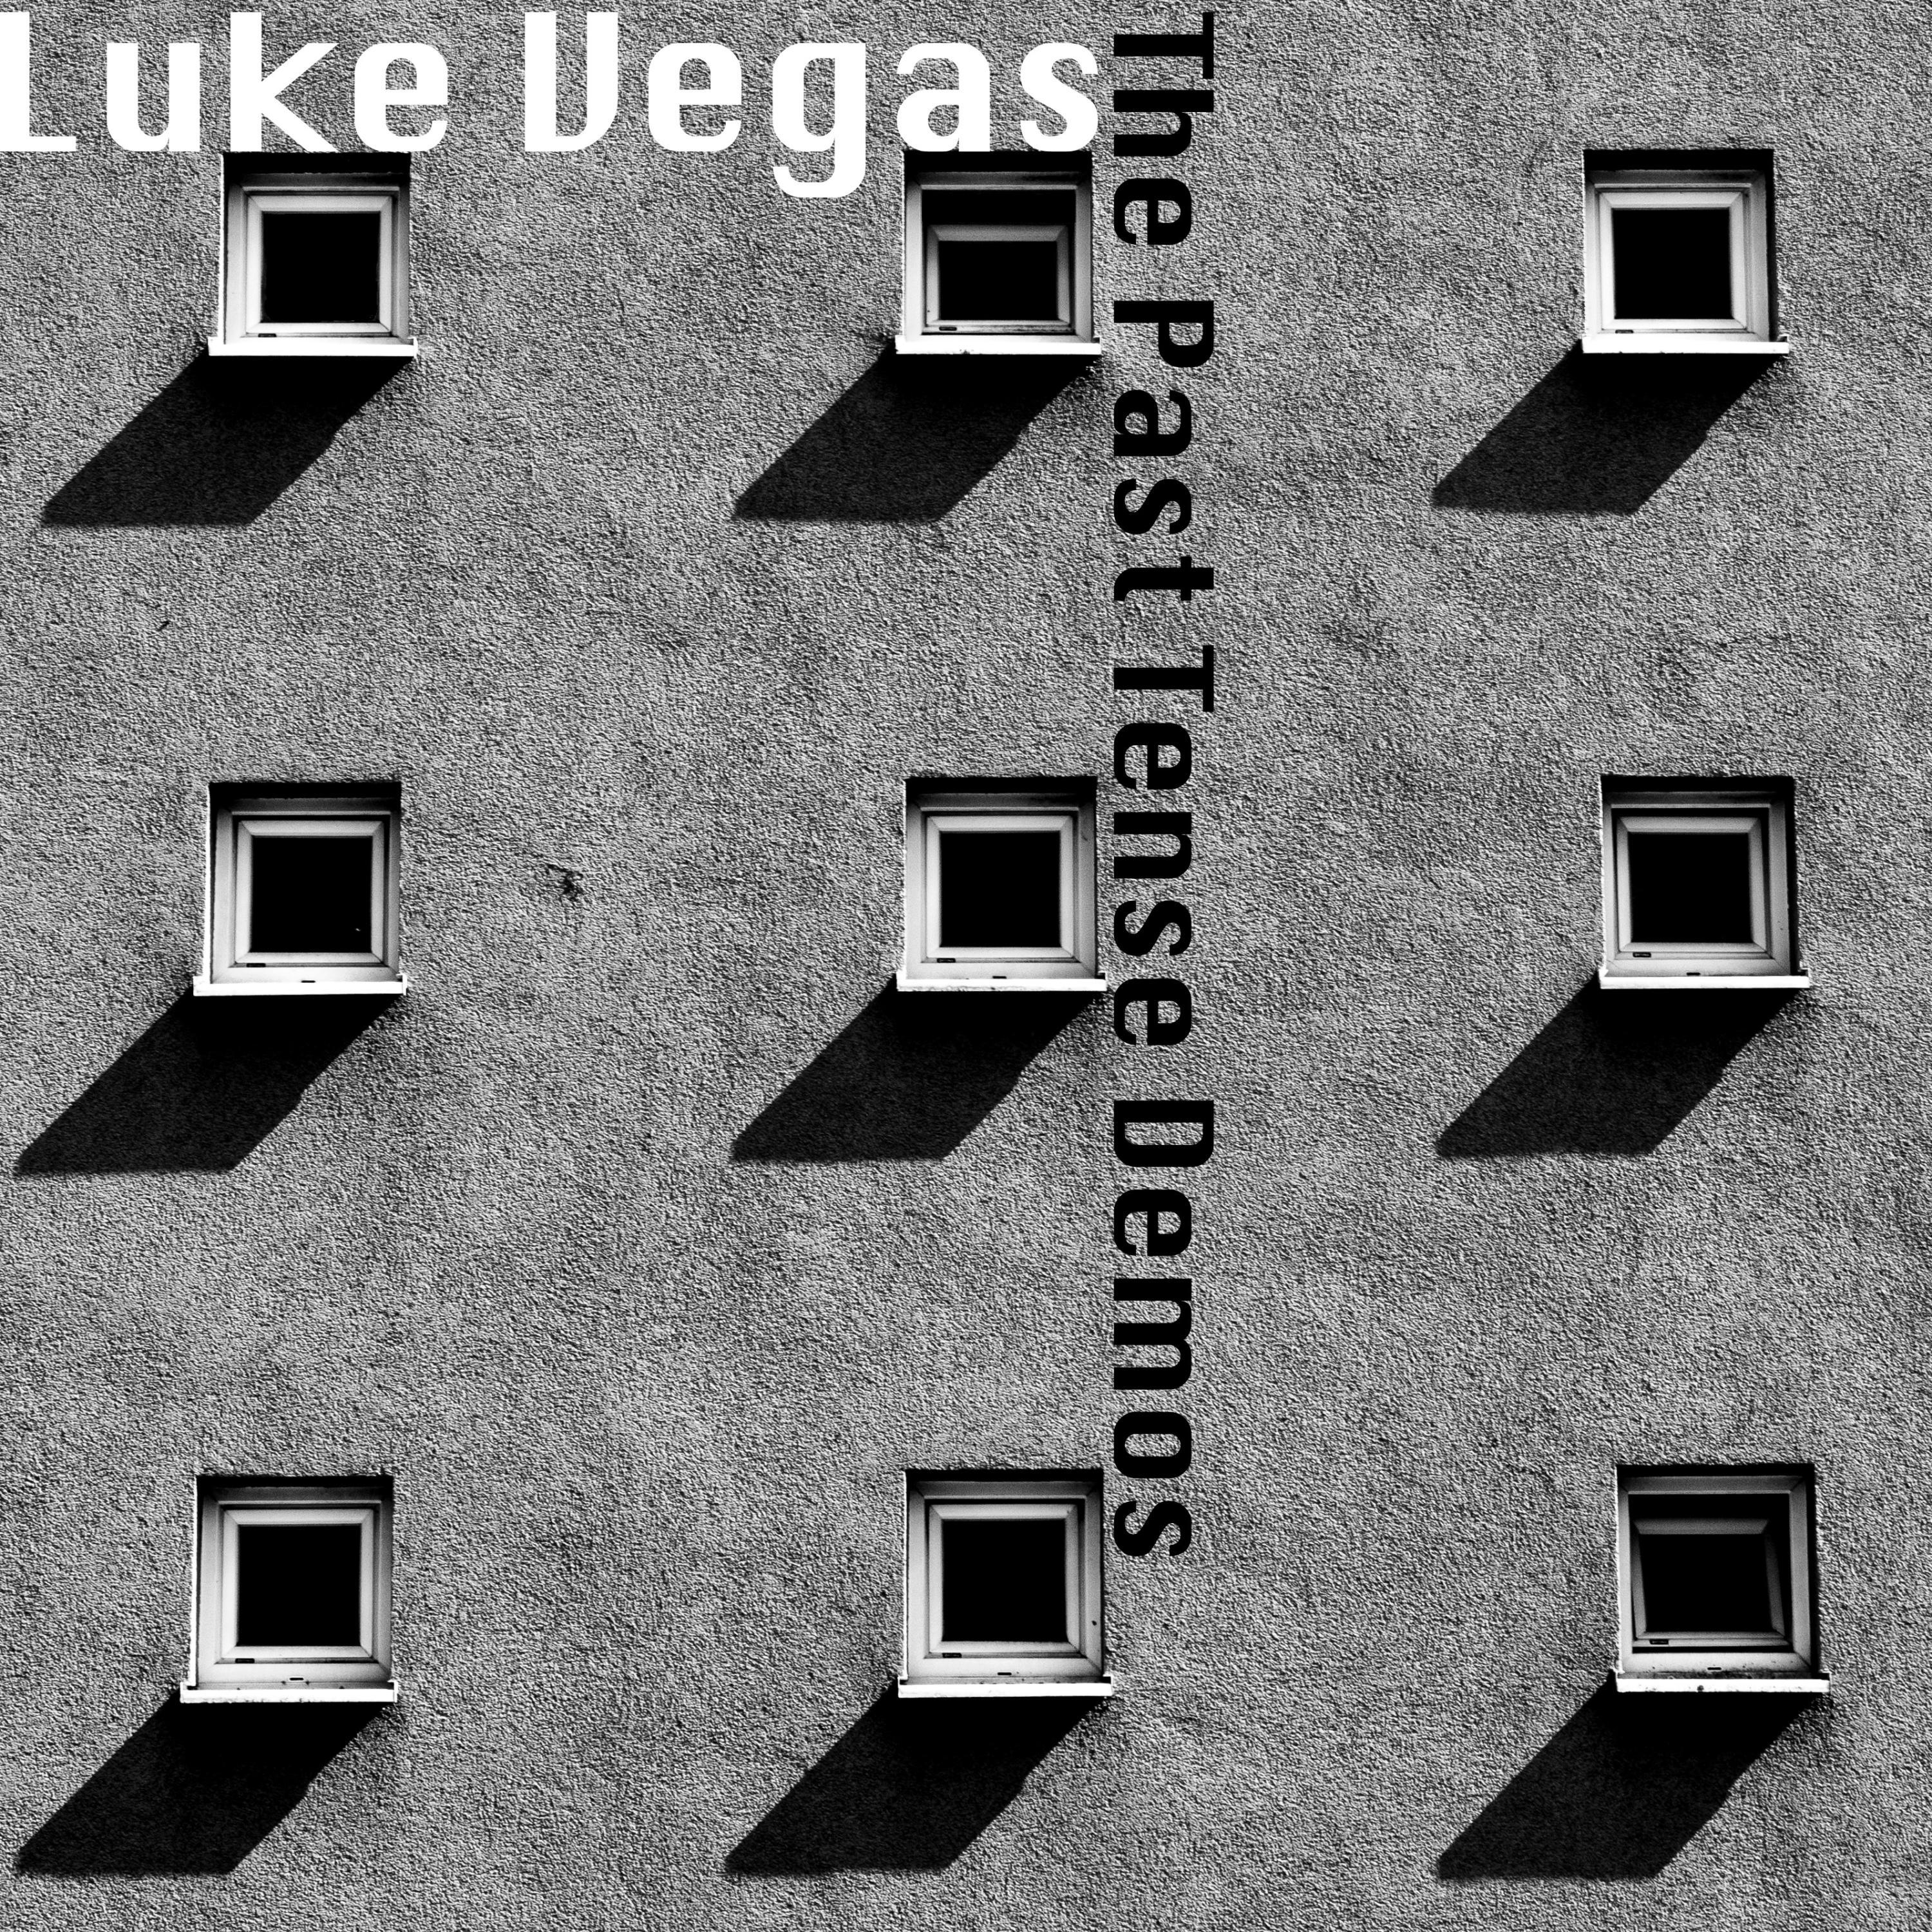 Luke Vegas - Death By Moped